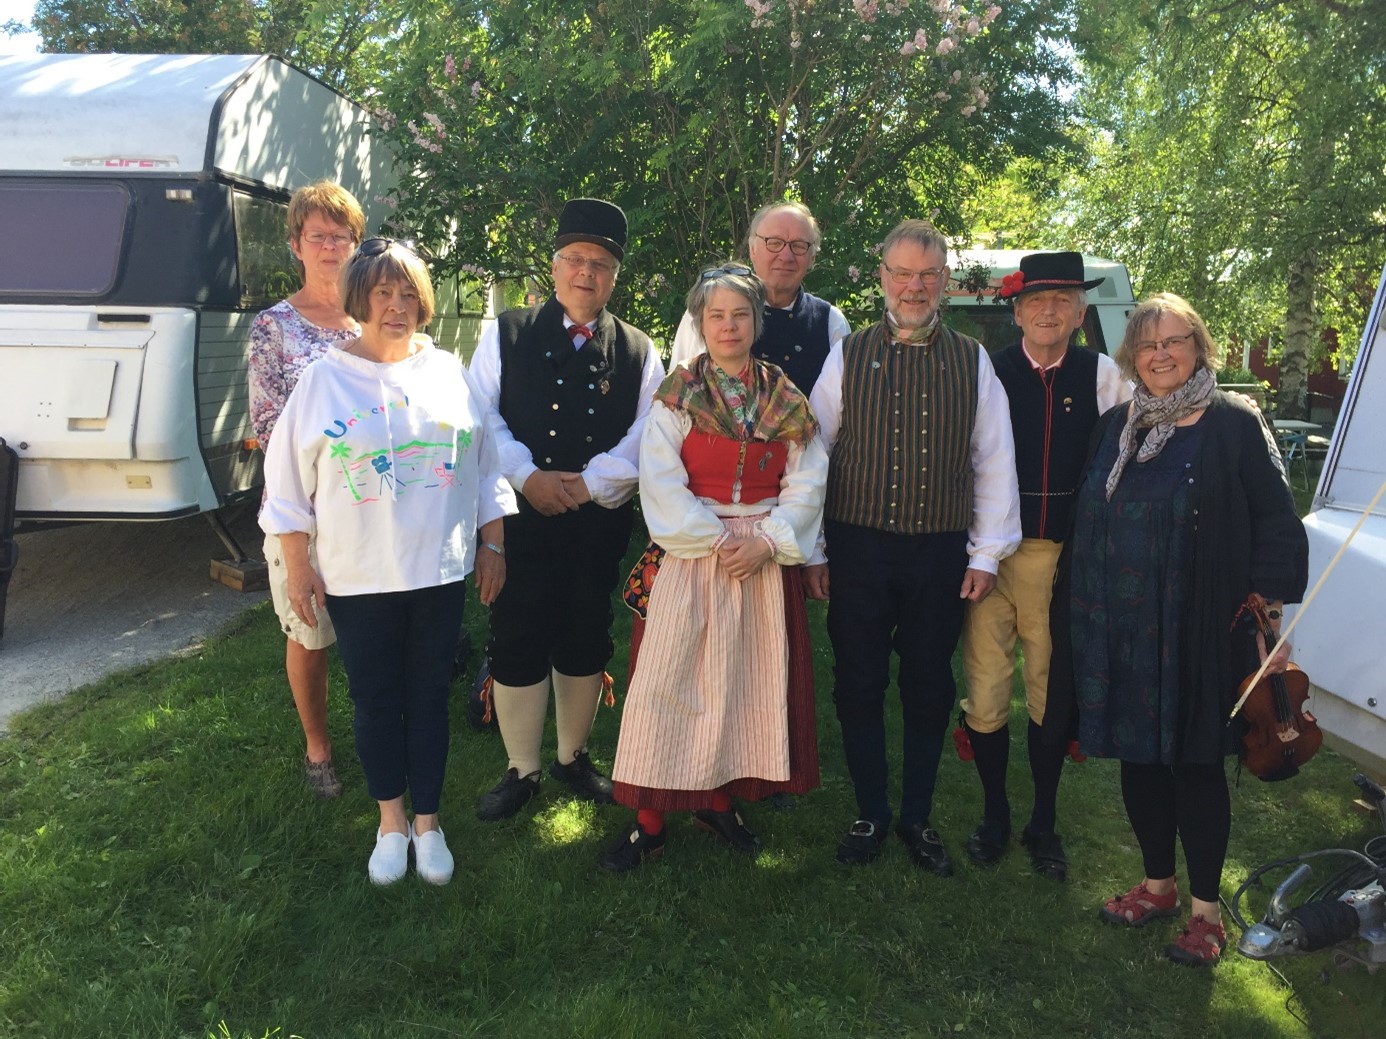 Älvdalens spelmanslag inbjöd vi till att delta i Hembygdsdagarnas festligheter. Vi bjöd på boplats och mat.